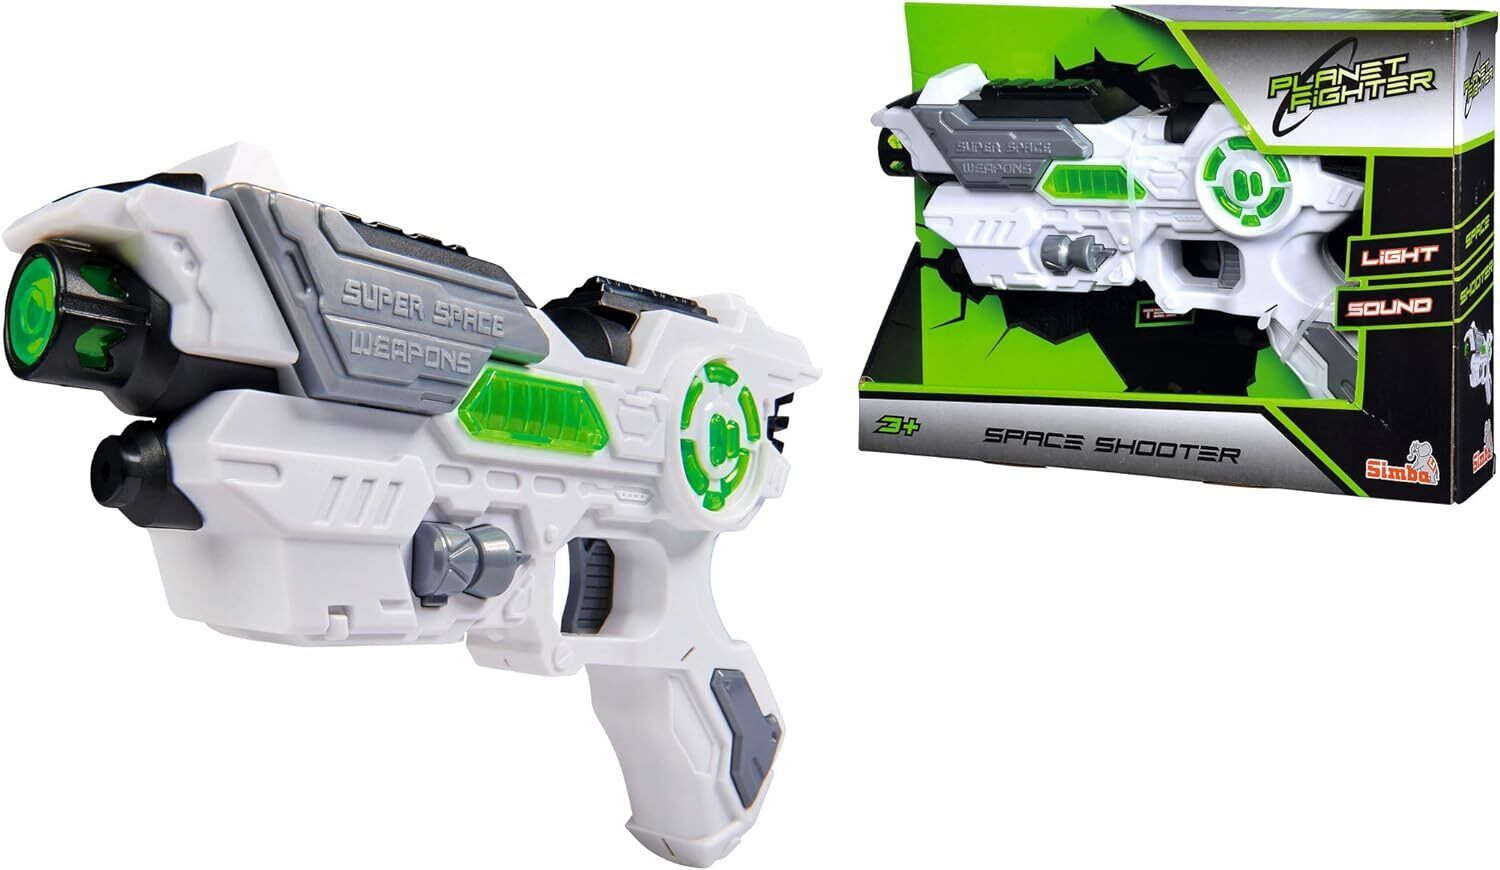 Laserpistole mit Licht und Sound PLanet Fighter